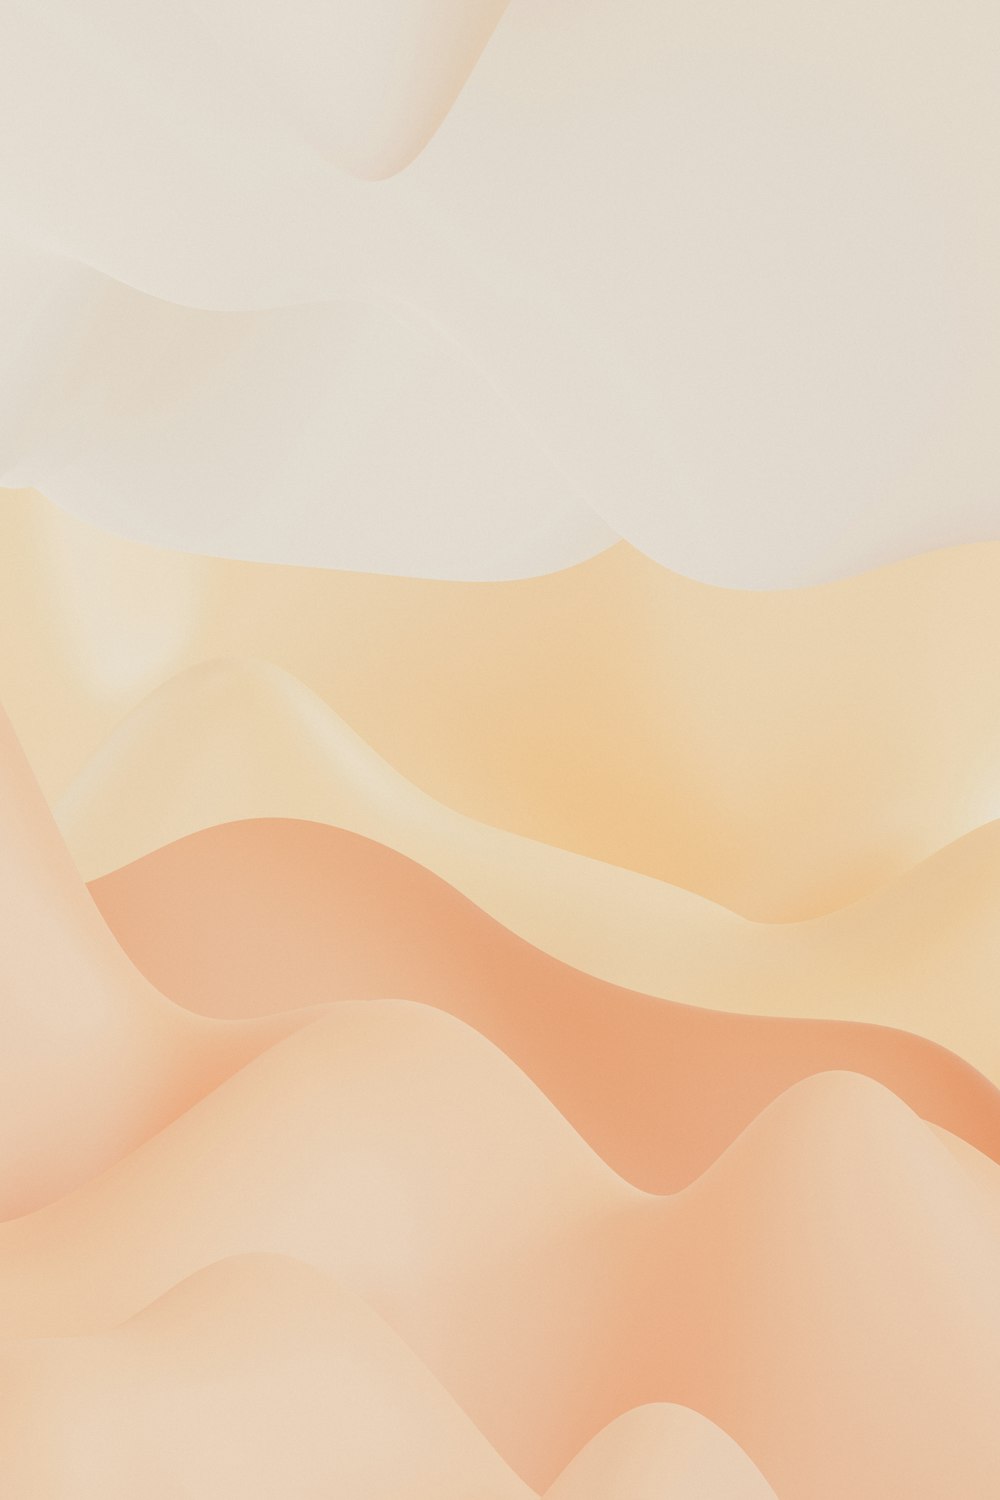 Una scena desertica con sfondo bianco e arancione